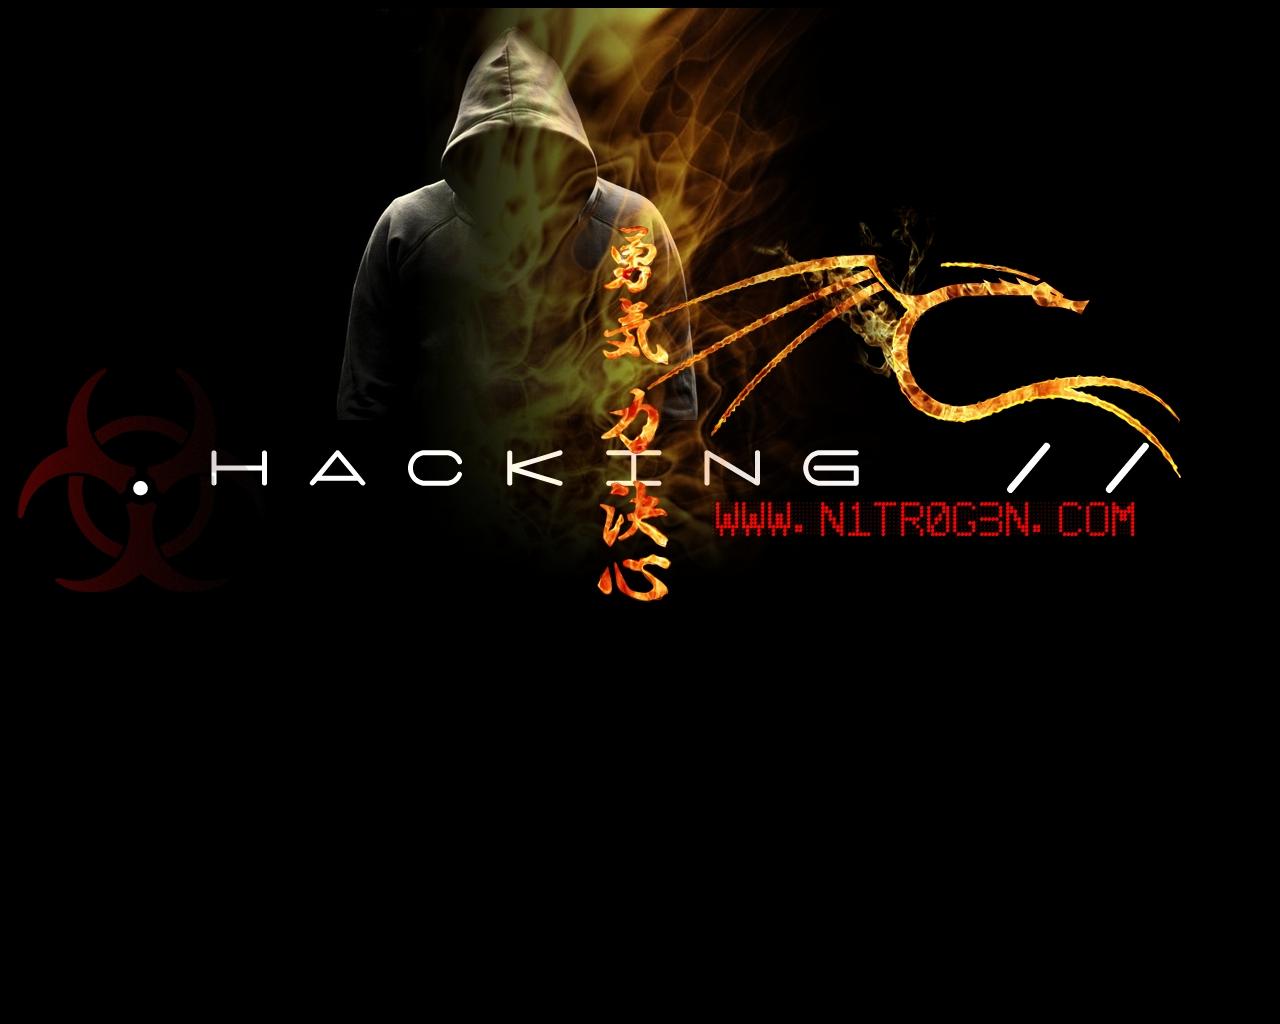 Ethical Hacking Wallpaper. Hacking Wallpaper, Fallout Hacking Wallpaper and Hacking Script Wallpaper